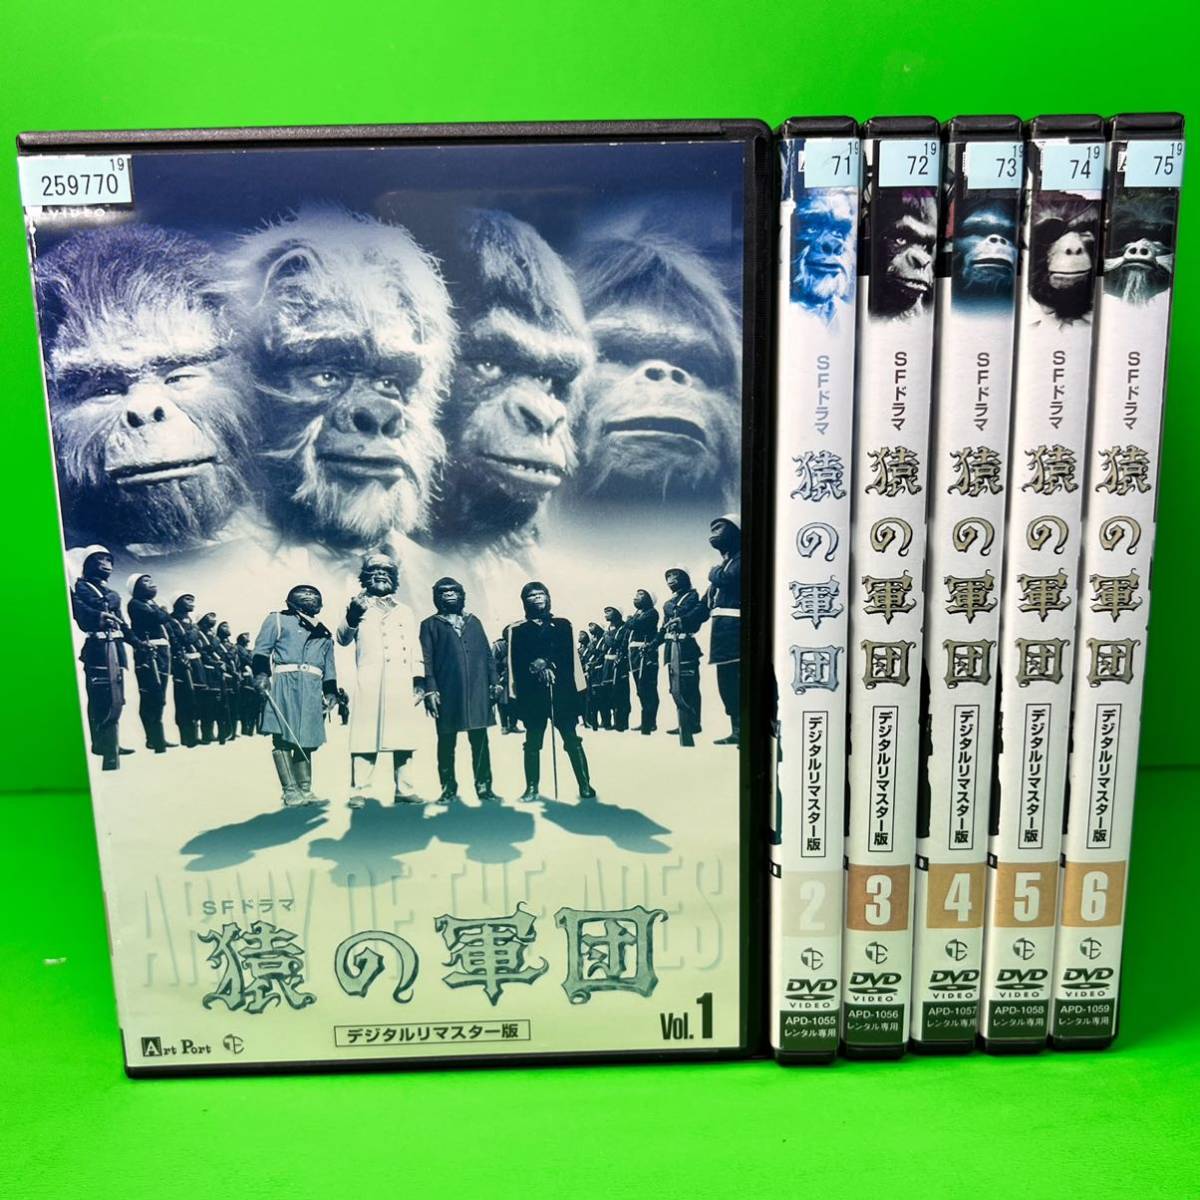 新品ケース付 SFドラマ 猿の軍団 デジタルリマスター版 DVD 全6巻 全巻